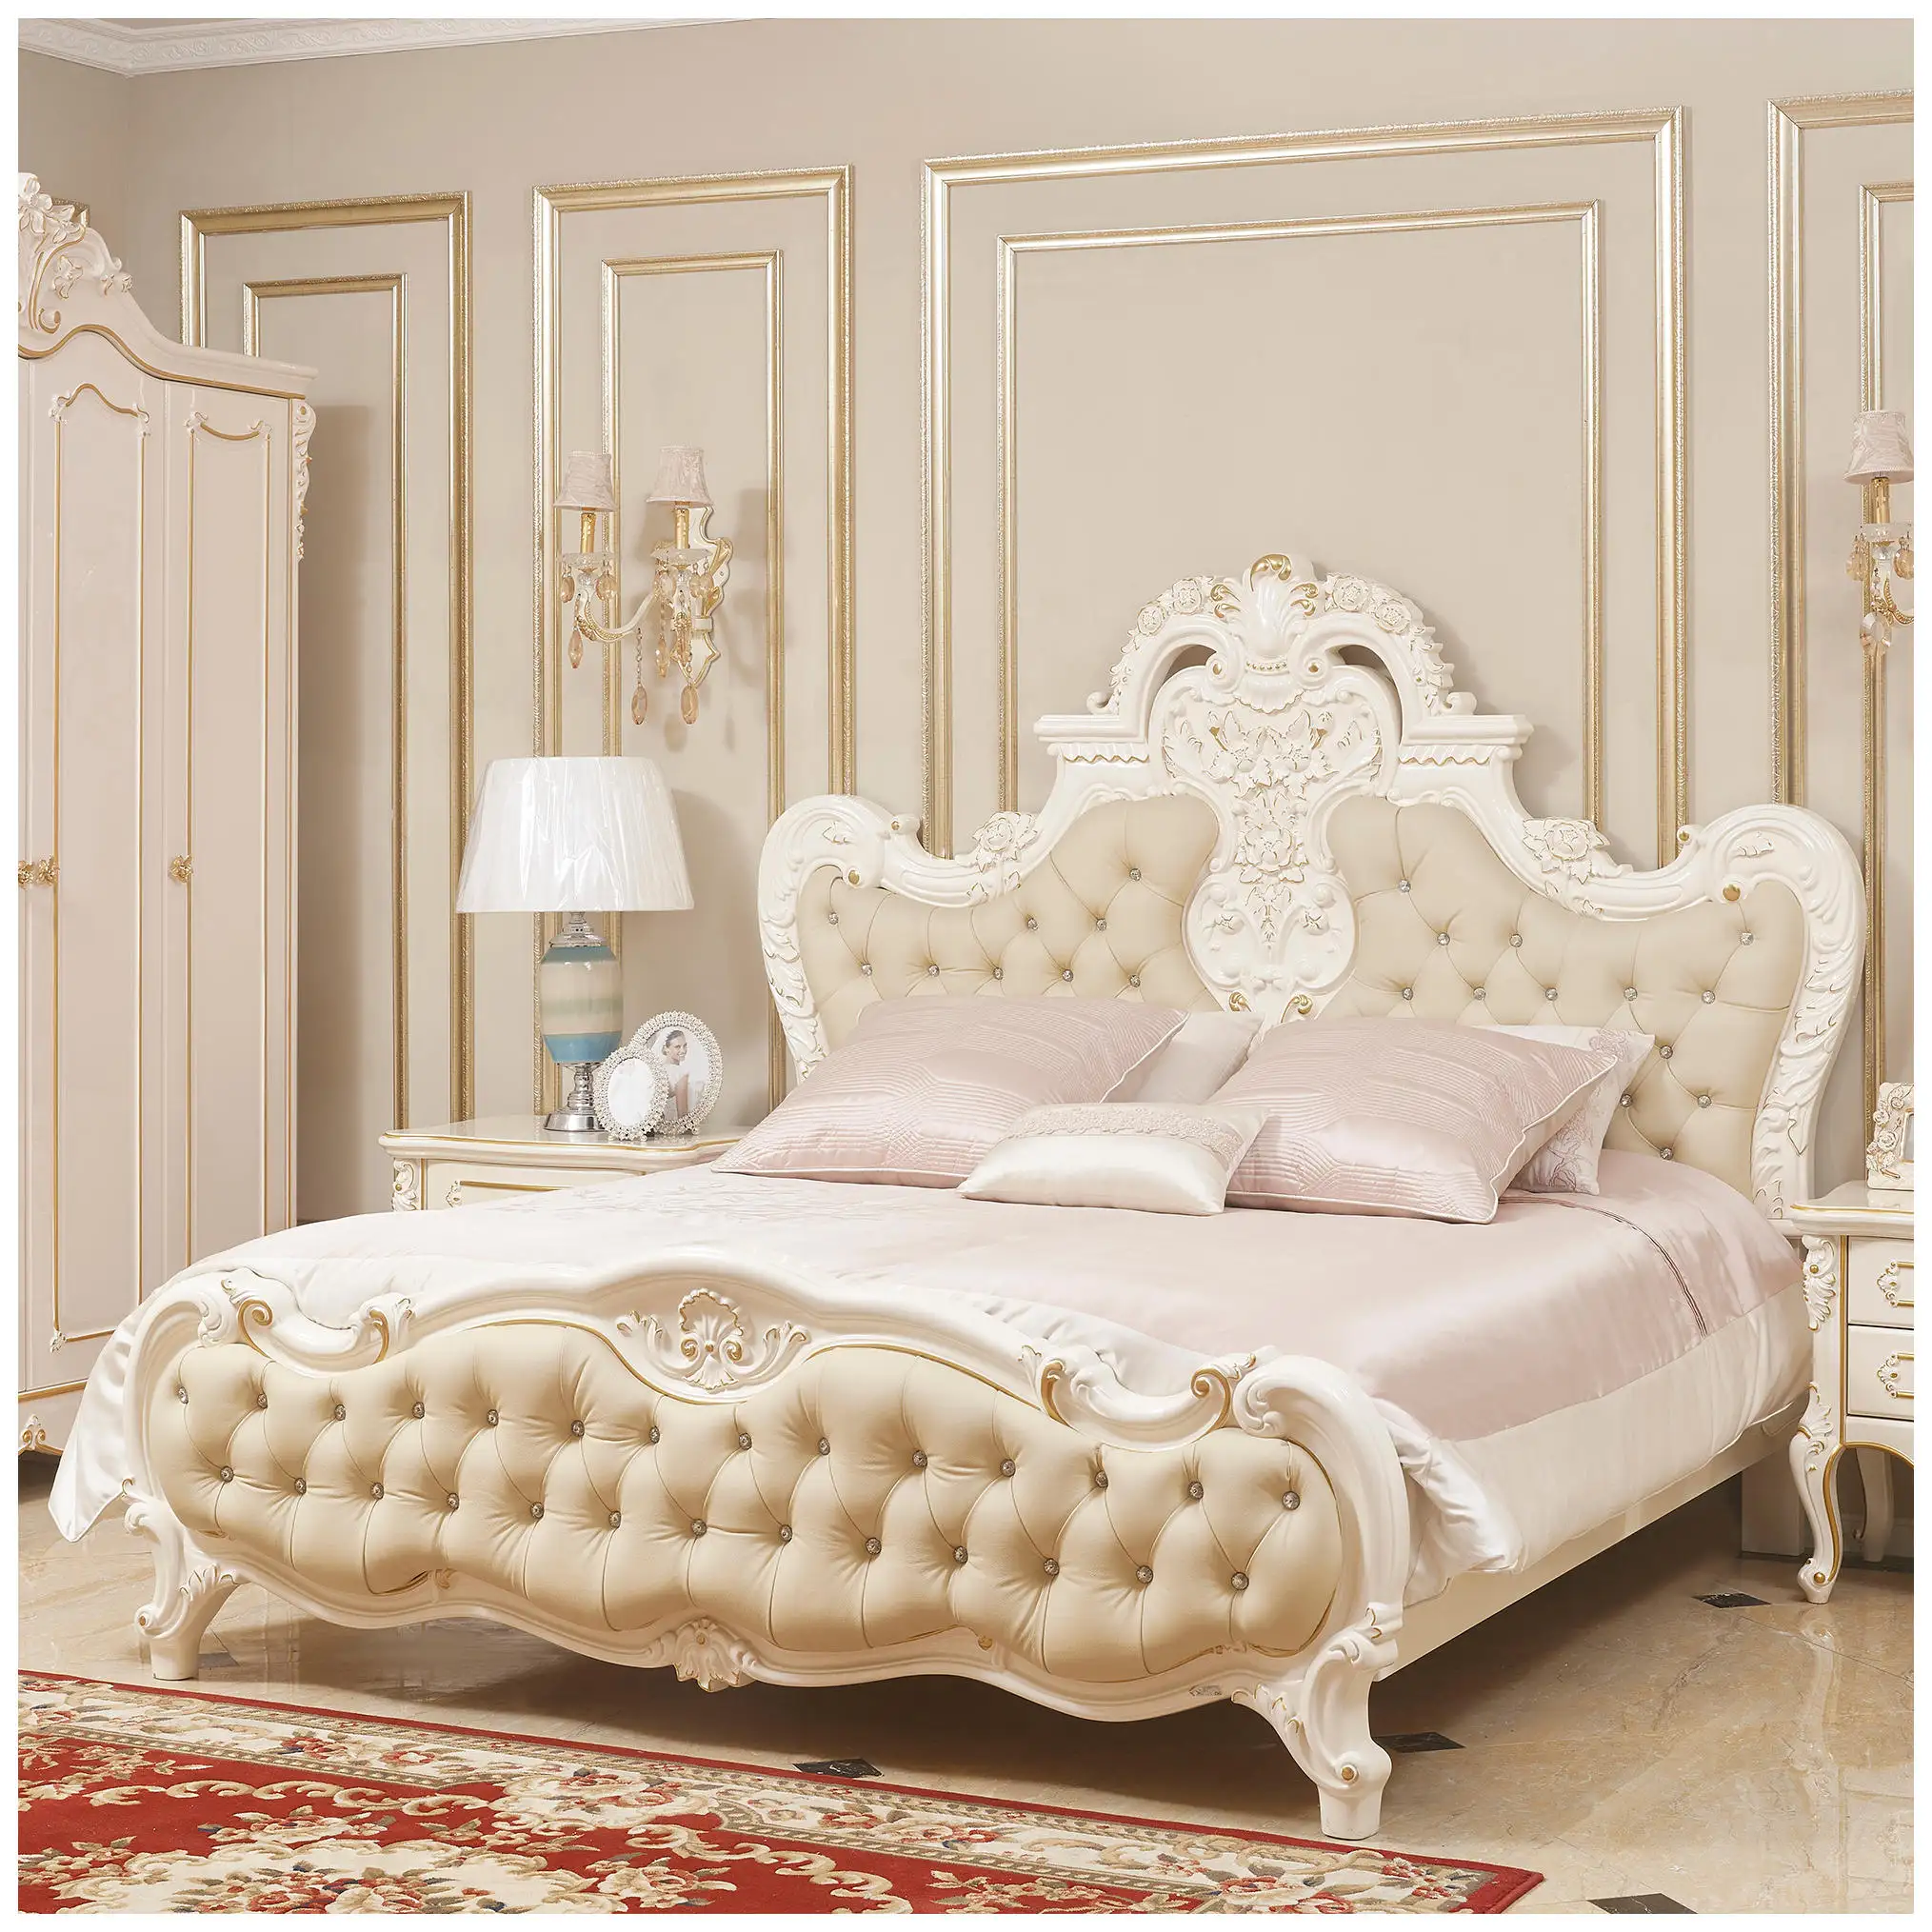 ヨーロピアンスタイル無垢材ベッドイタリアンラグジュアリースタイル寝室用家具セット